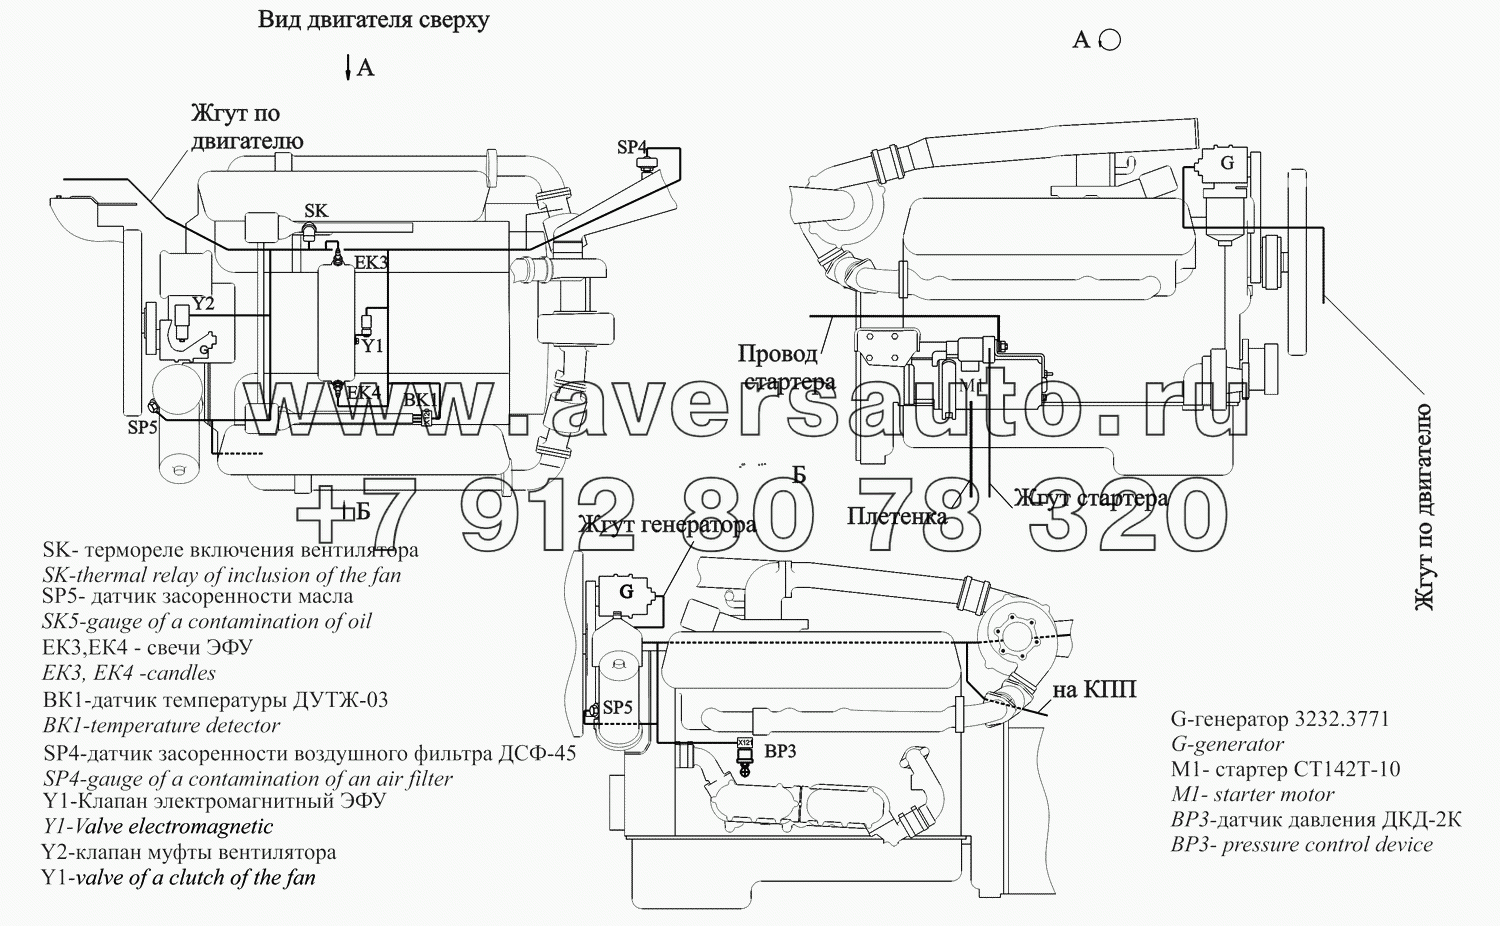 Расположение разъемов и элементов электрооборудования на двигателе ЯМЗ-238ДЕ2